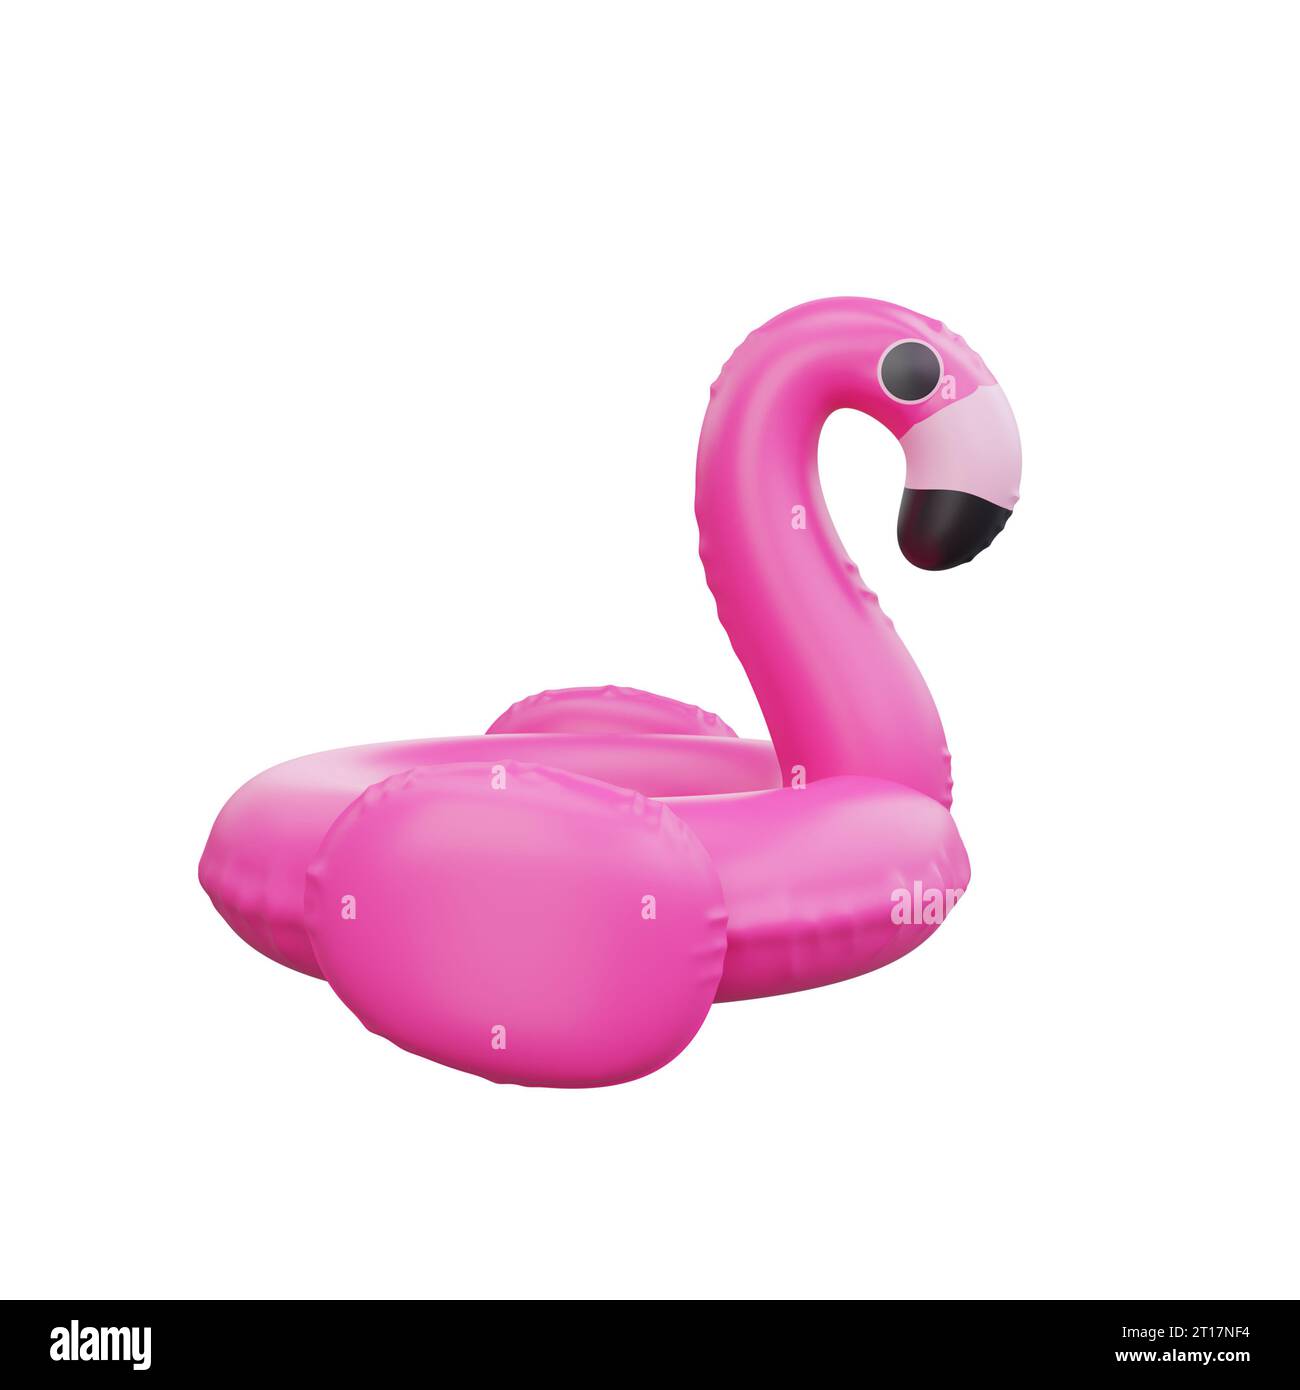 Representación 3D de un flotador inflable de la piscina del flamenco rosado juguetón, simbolizando la diversión y la relajación del verano Foto de stock